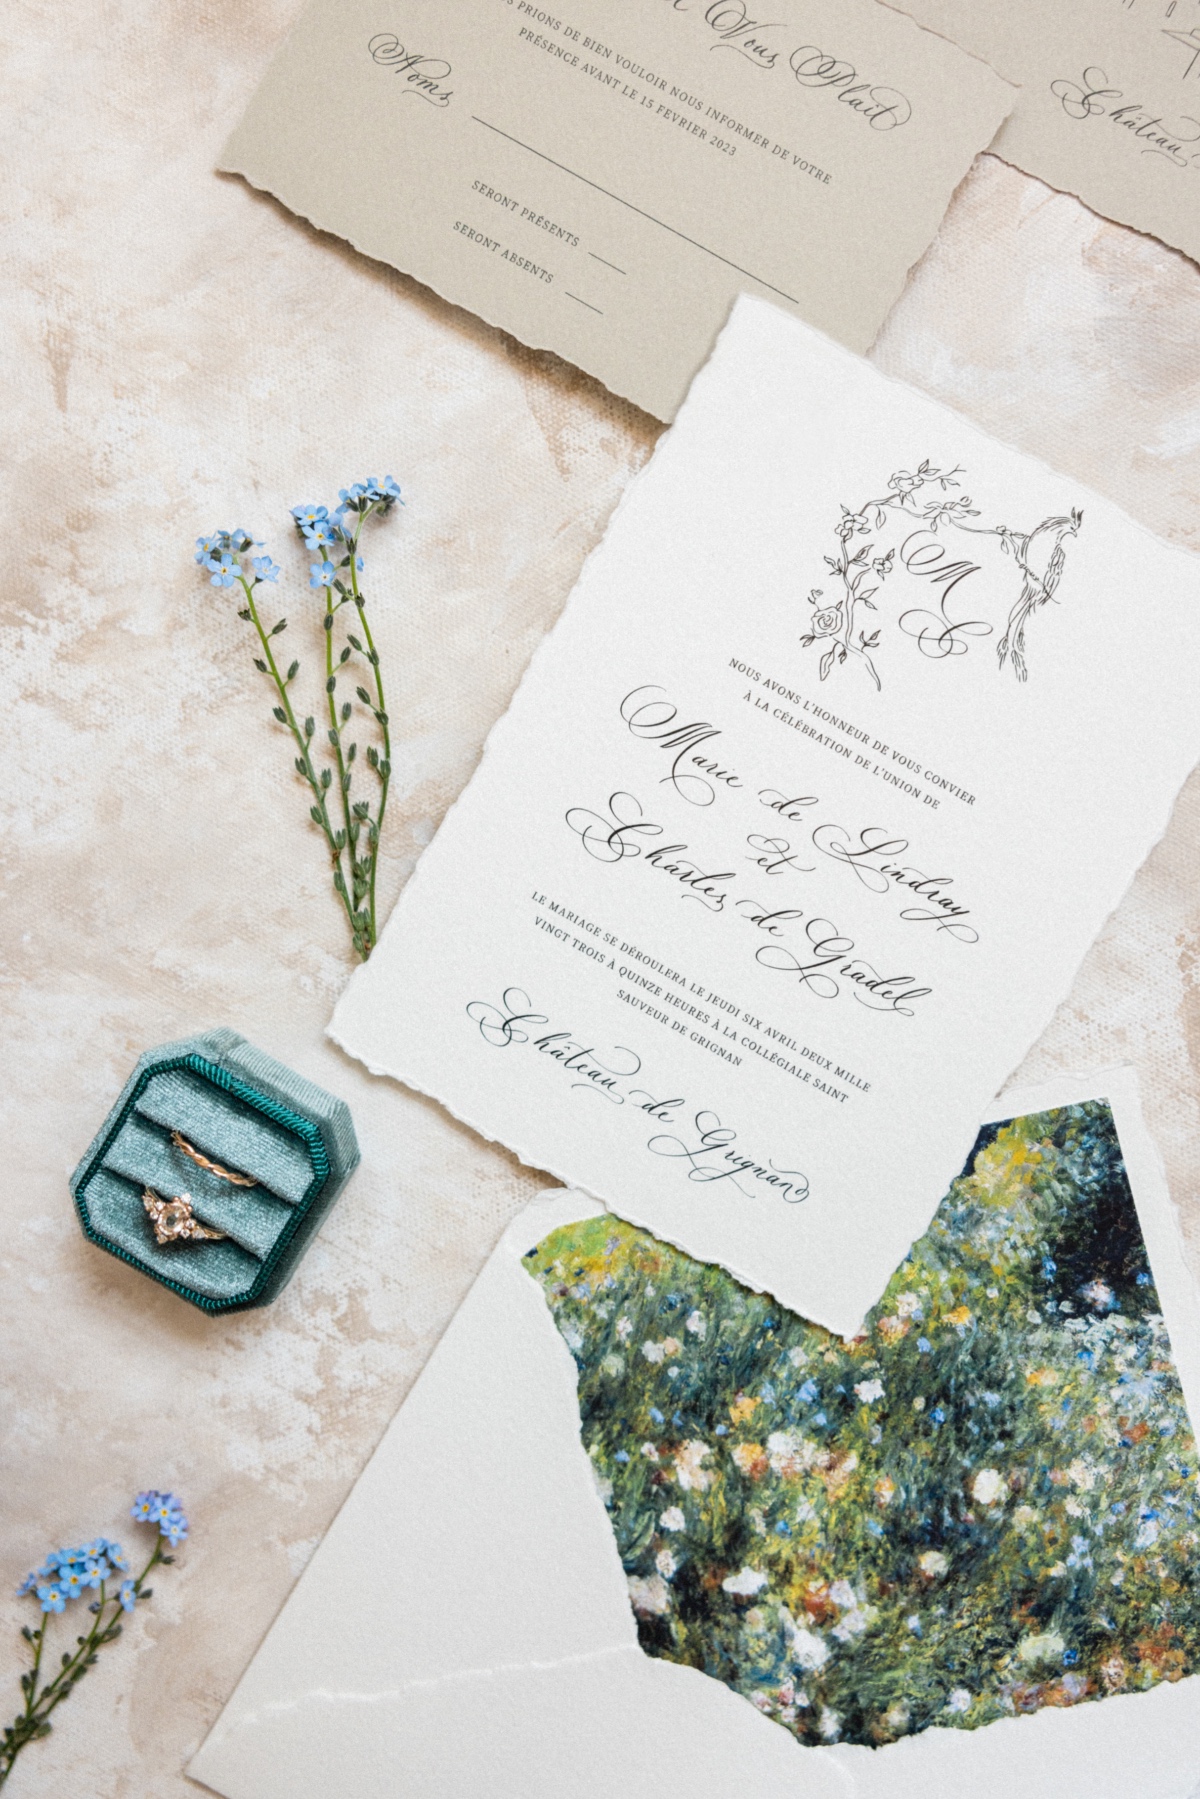 Monet-inspired wedding envelopes